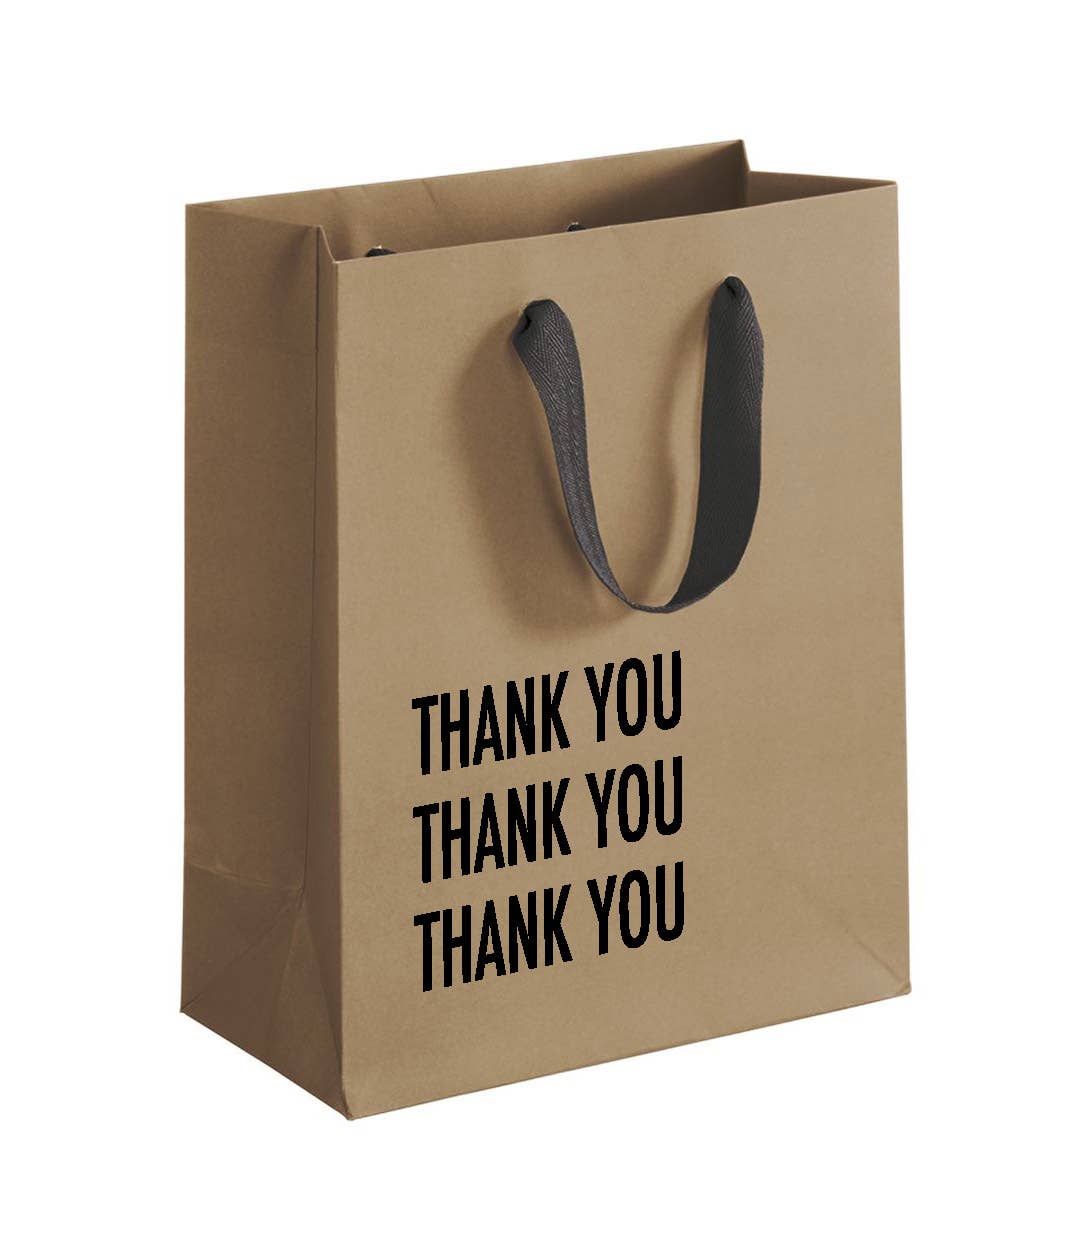 Thank you, thank you, thank you thoughful kraft paper gift bag